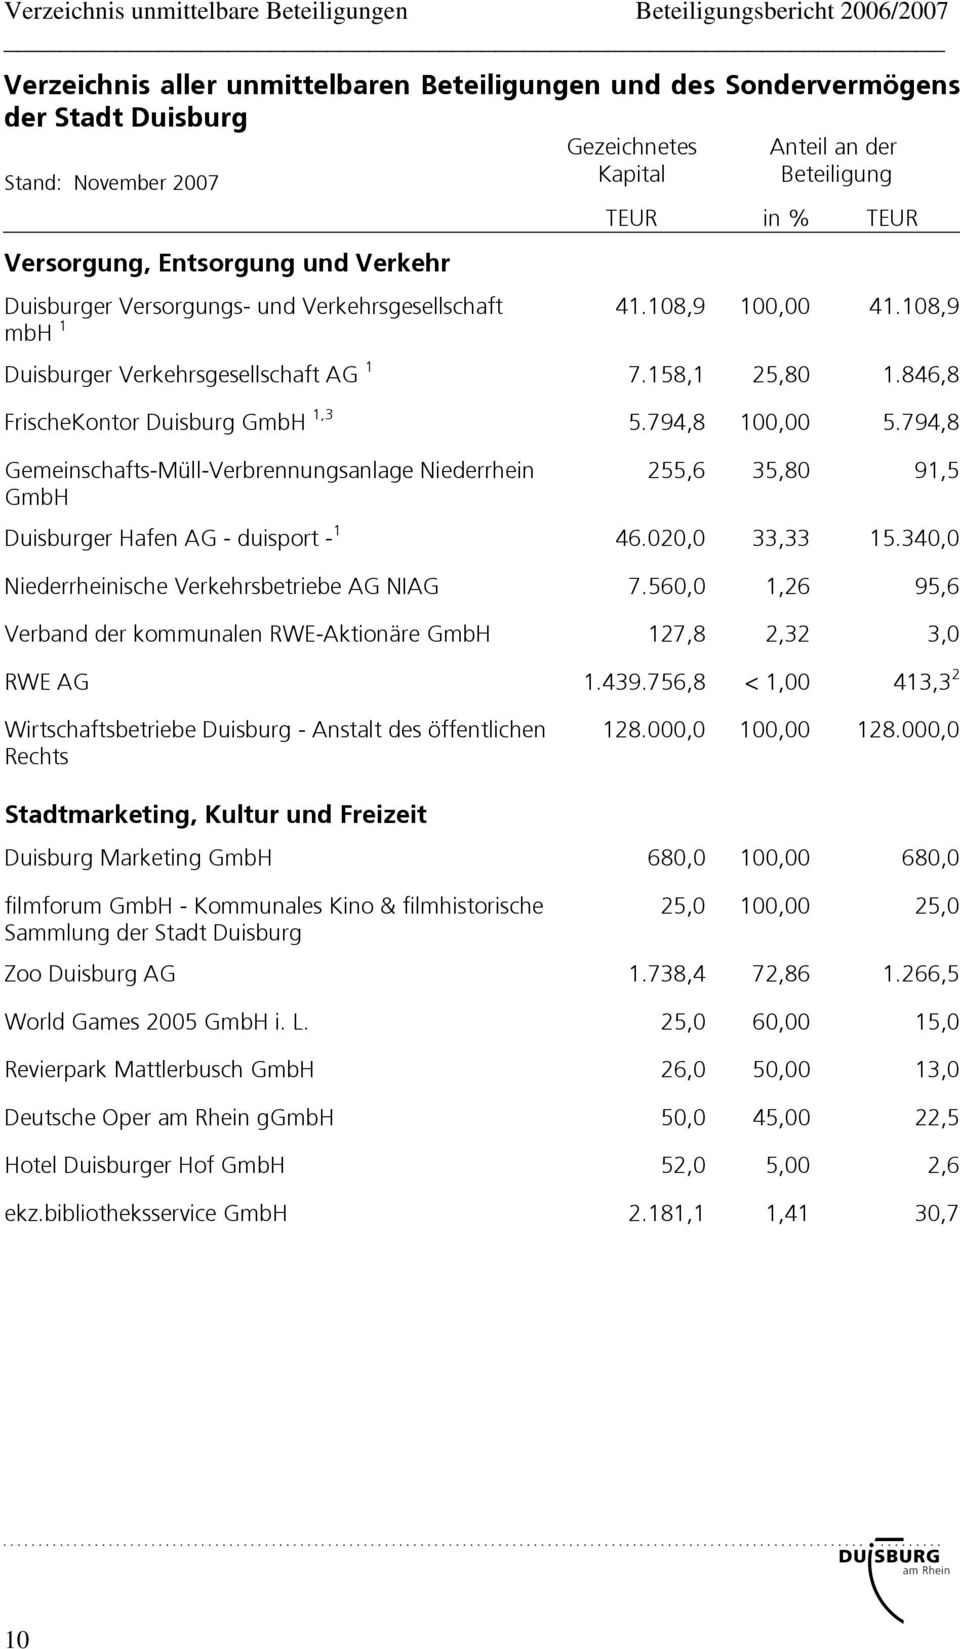 108,9 mbh 1 Duisburger Verkehrsgesellschaft AG 1 7.158,1 25,80 1.846,8 FrischeKontor Duisburg GmbH 1,3 5.794,8 100,00 5.